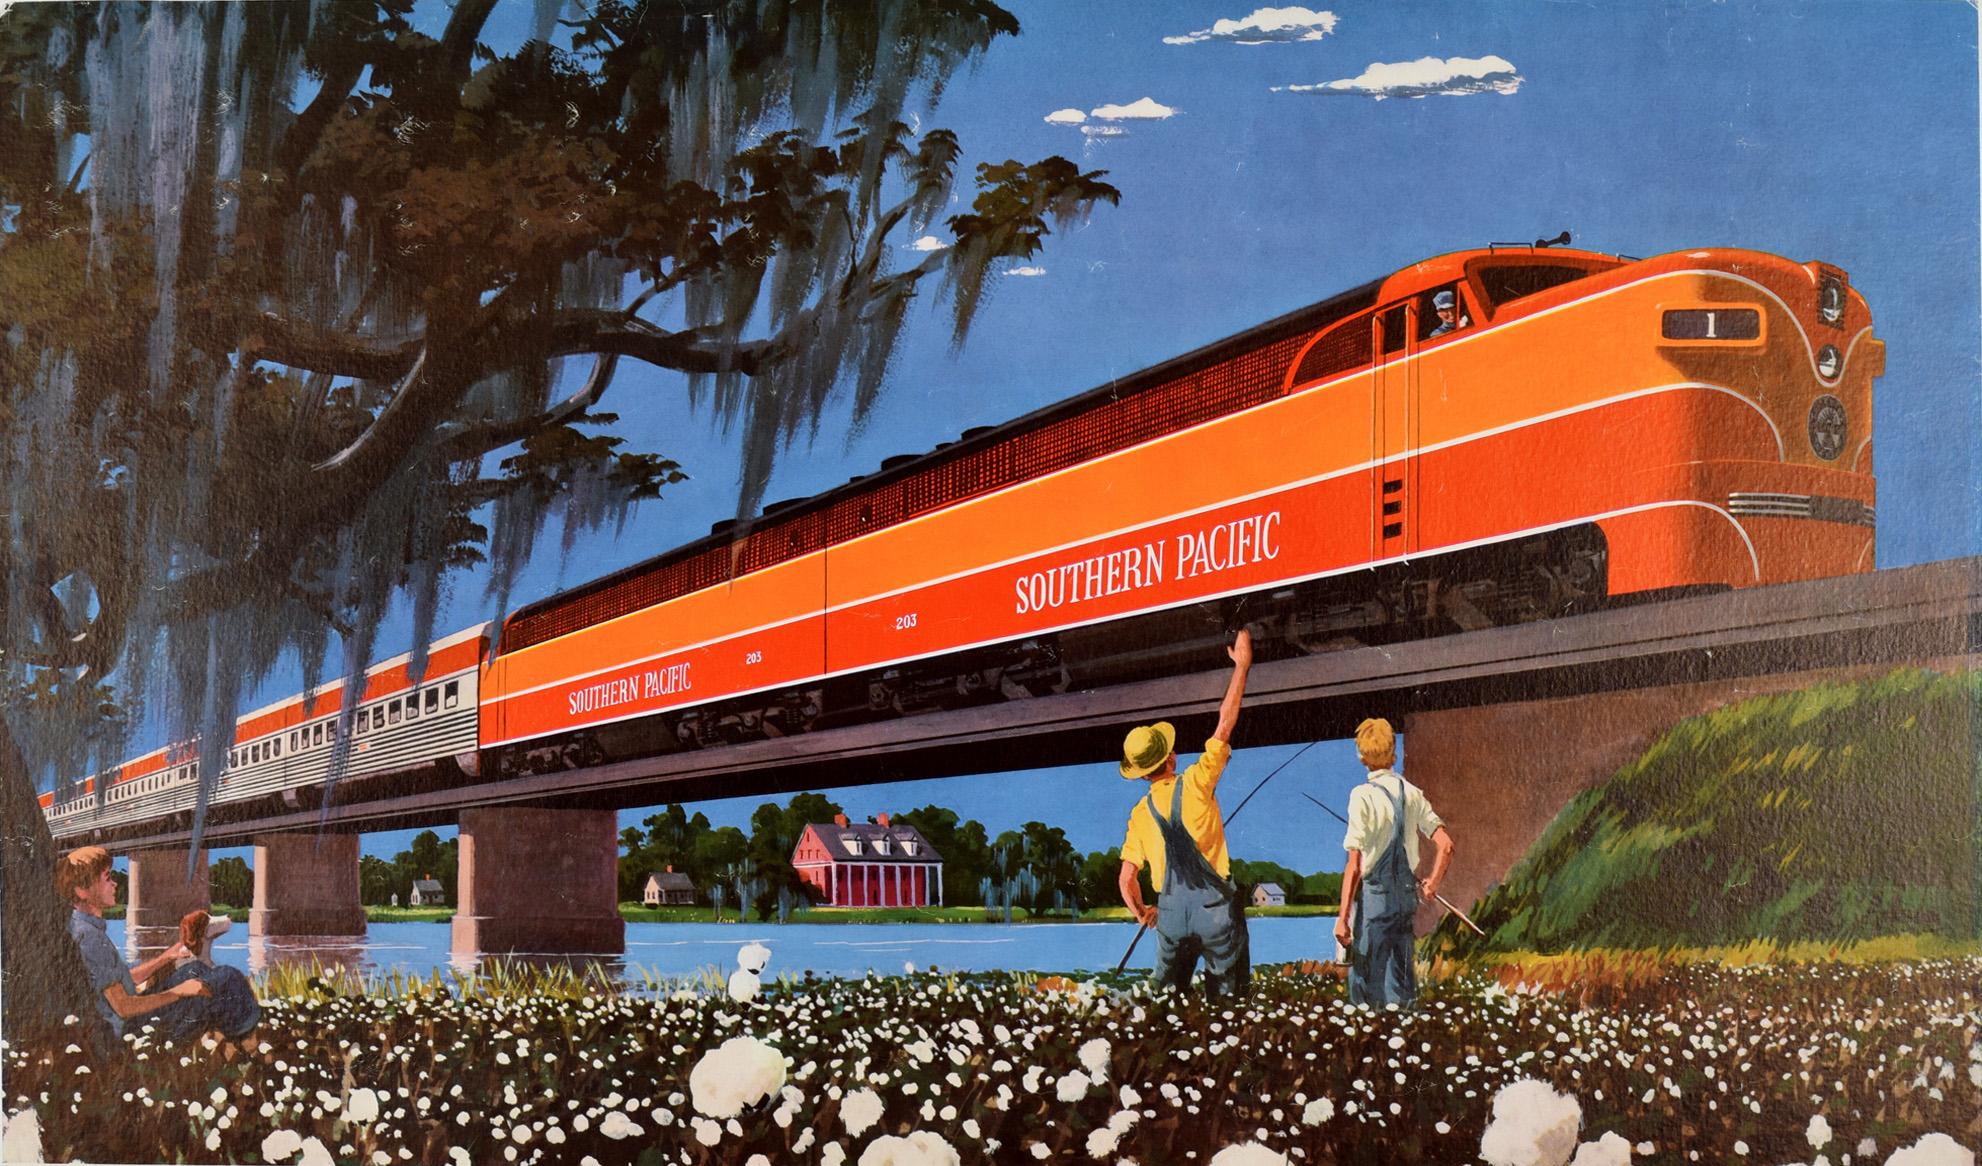 Affiche originale d'époque de la compagnie ferroviaire Southern Pacific présentant une image colorée du train Streamlined Train With The Southern Accent traversant un pont ferroviaire au-dessus d'une rivière dans un ciel bleu clair avec deux hommes